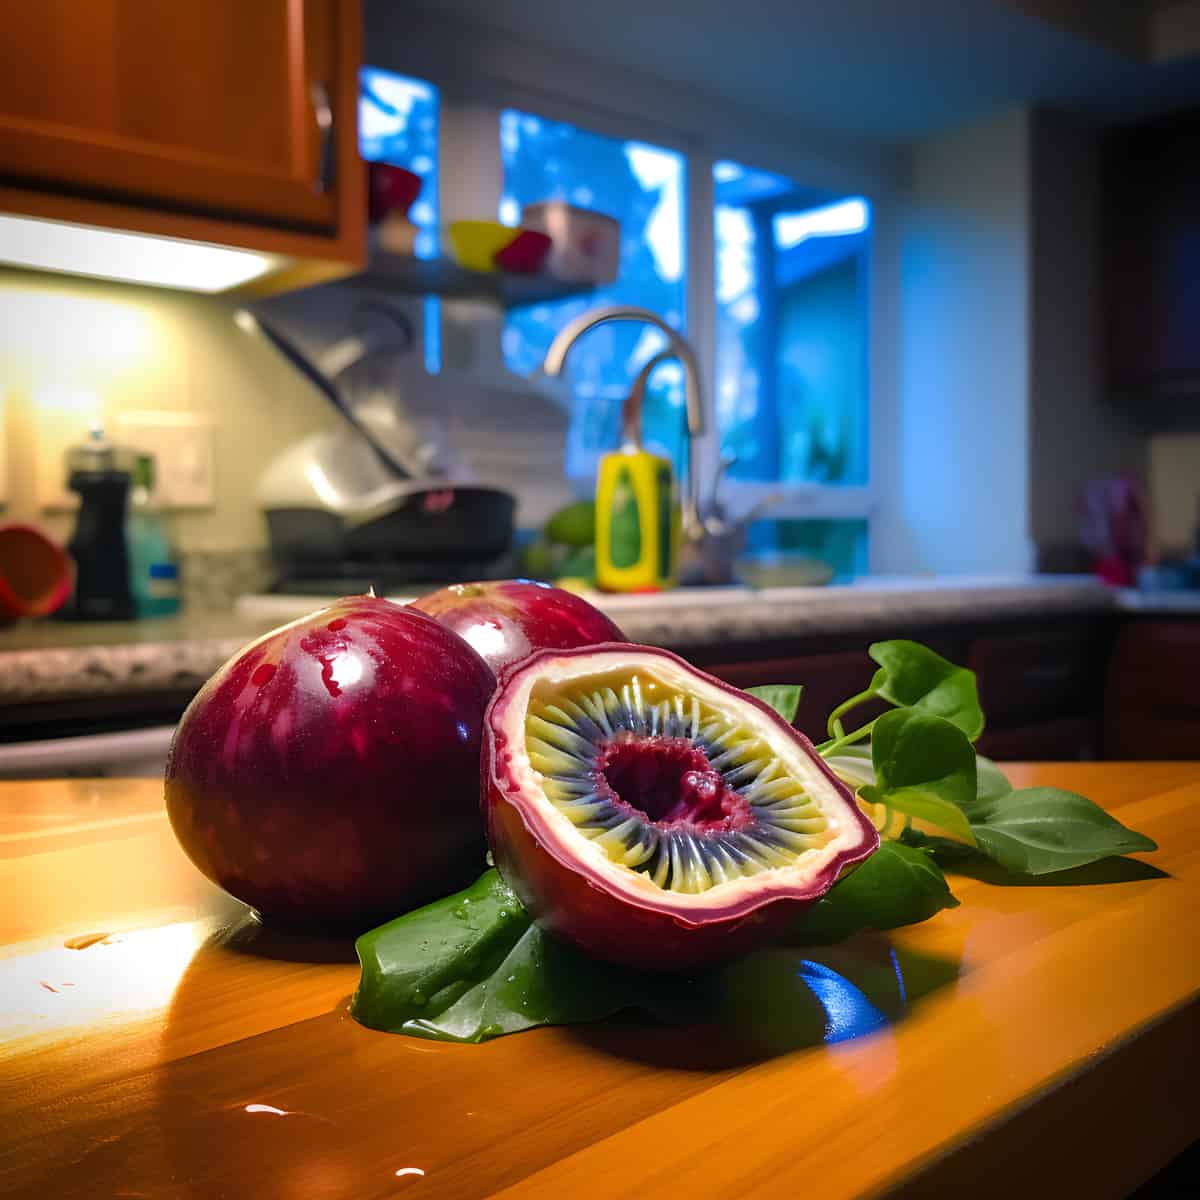 Passiflora Ambigua on a kitchen counter